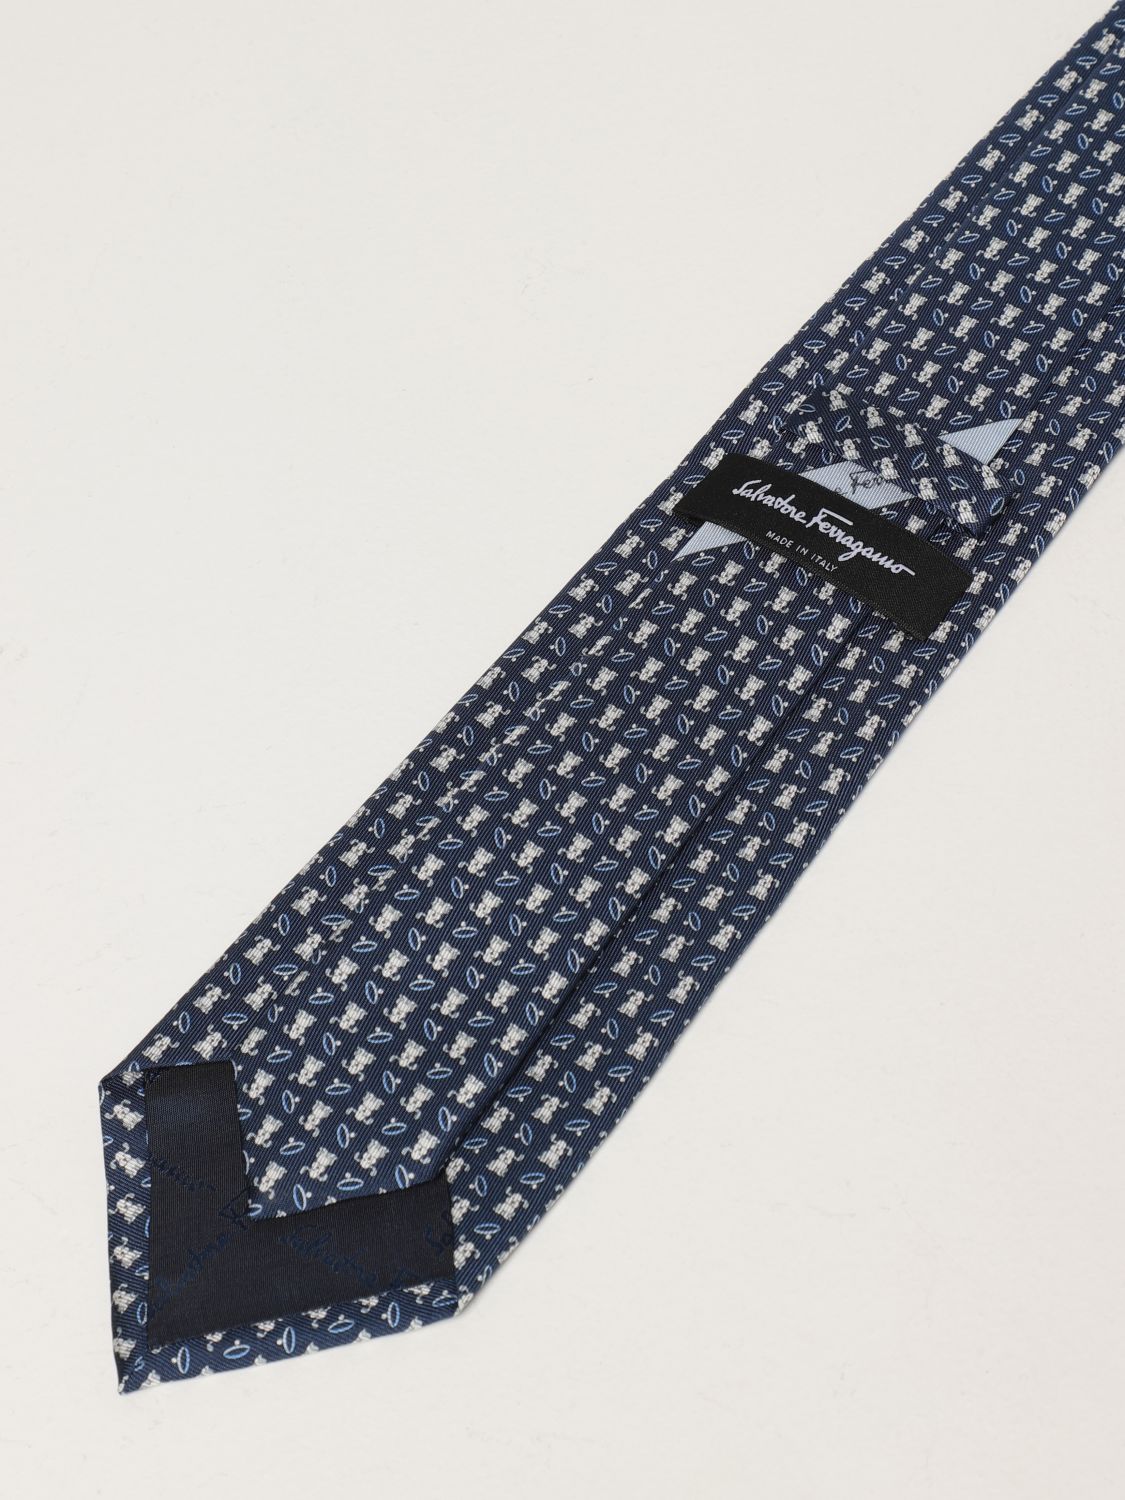 Cravate Salvatore Ferragamo: Cravate en soie Salvatore Ferragamo avec micro chiens bleu marine 2